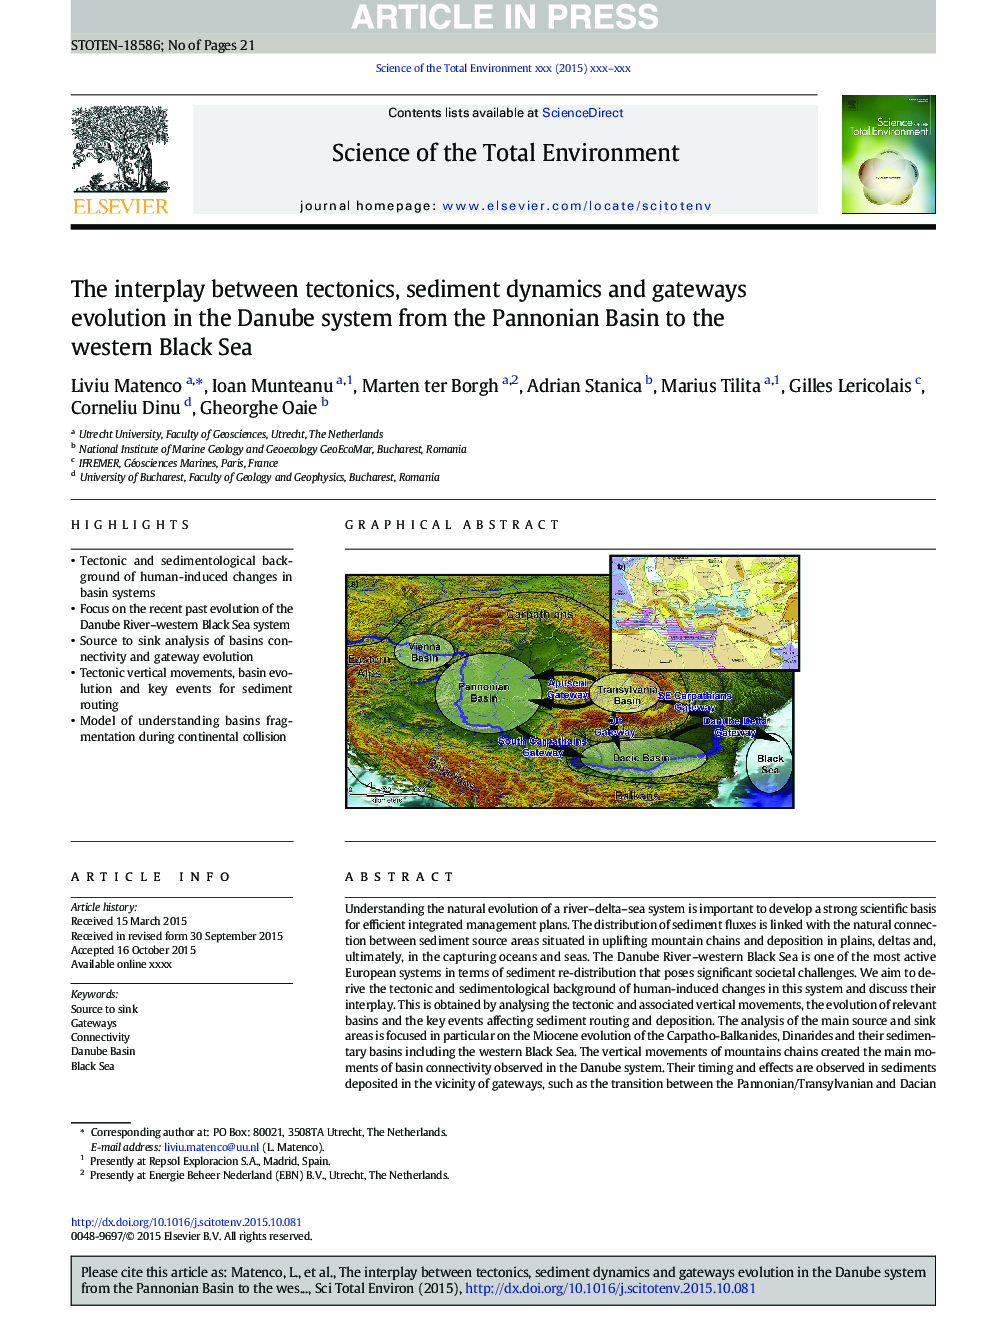 تعامل بین تکتونیک، دینامیک رسوبات و تکامل دروازه در سیستم دانوب از حوضه پانونی تا دریای سیاه دریای سیاه 